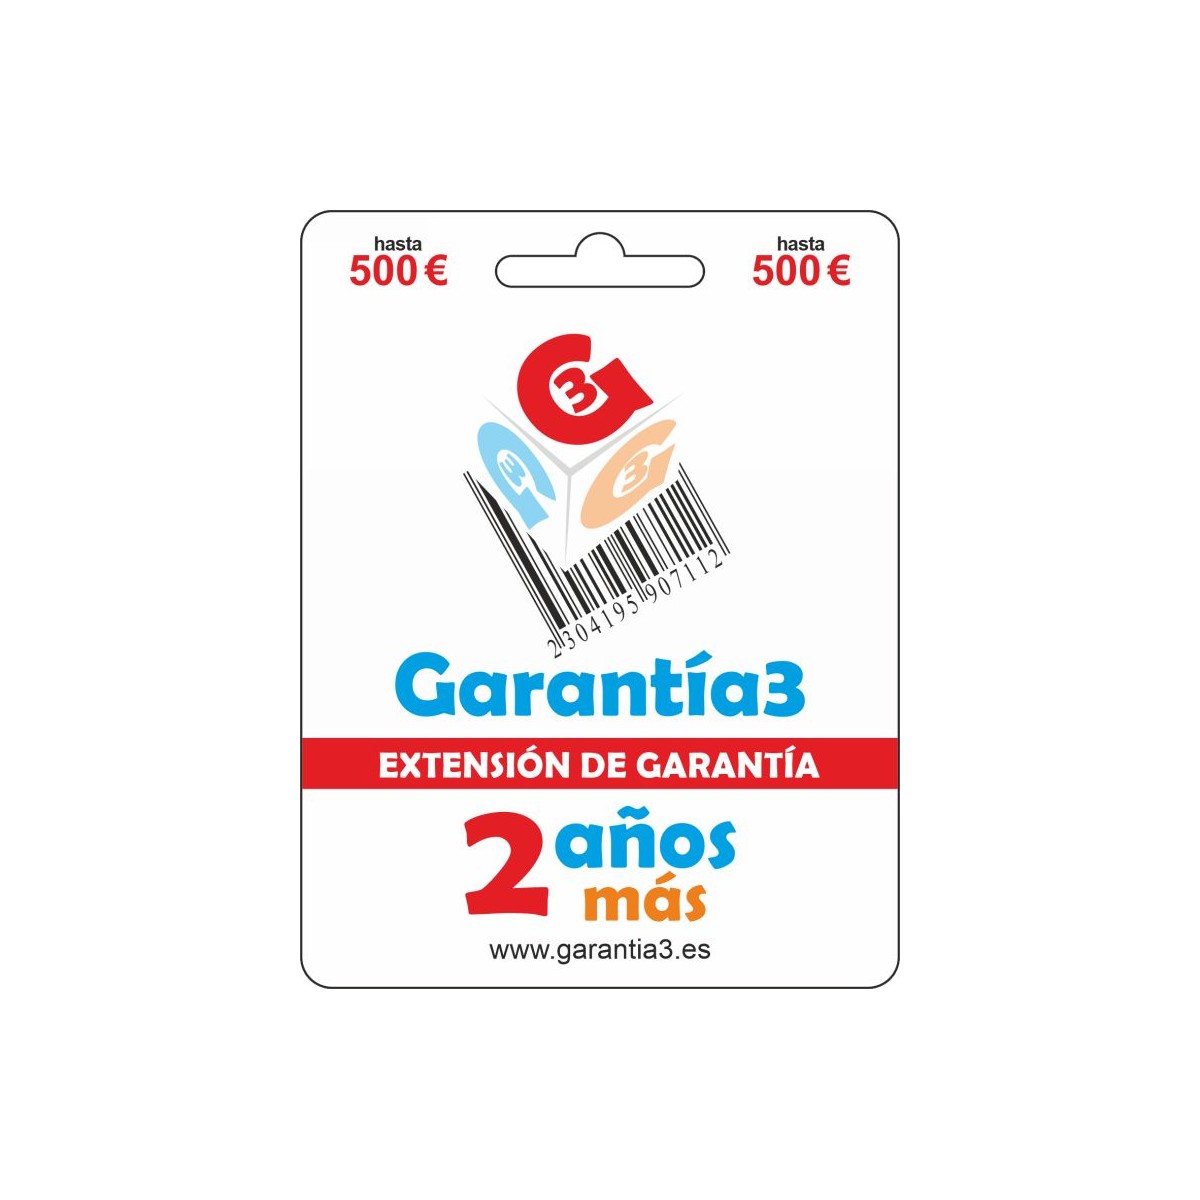 EXTENSIÓN DE GARANTÍA - 2 AÑOS MÁS - tope máximo 500€